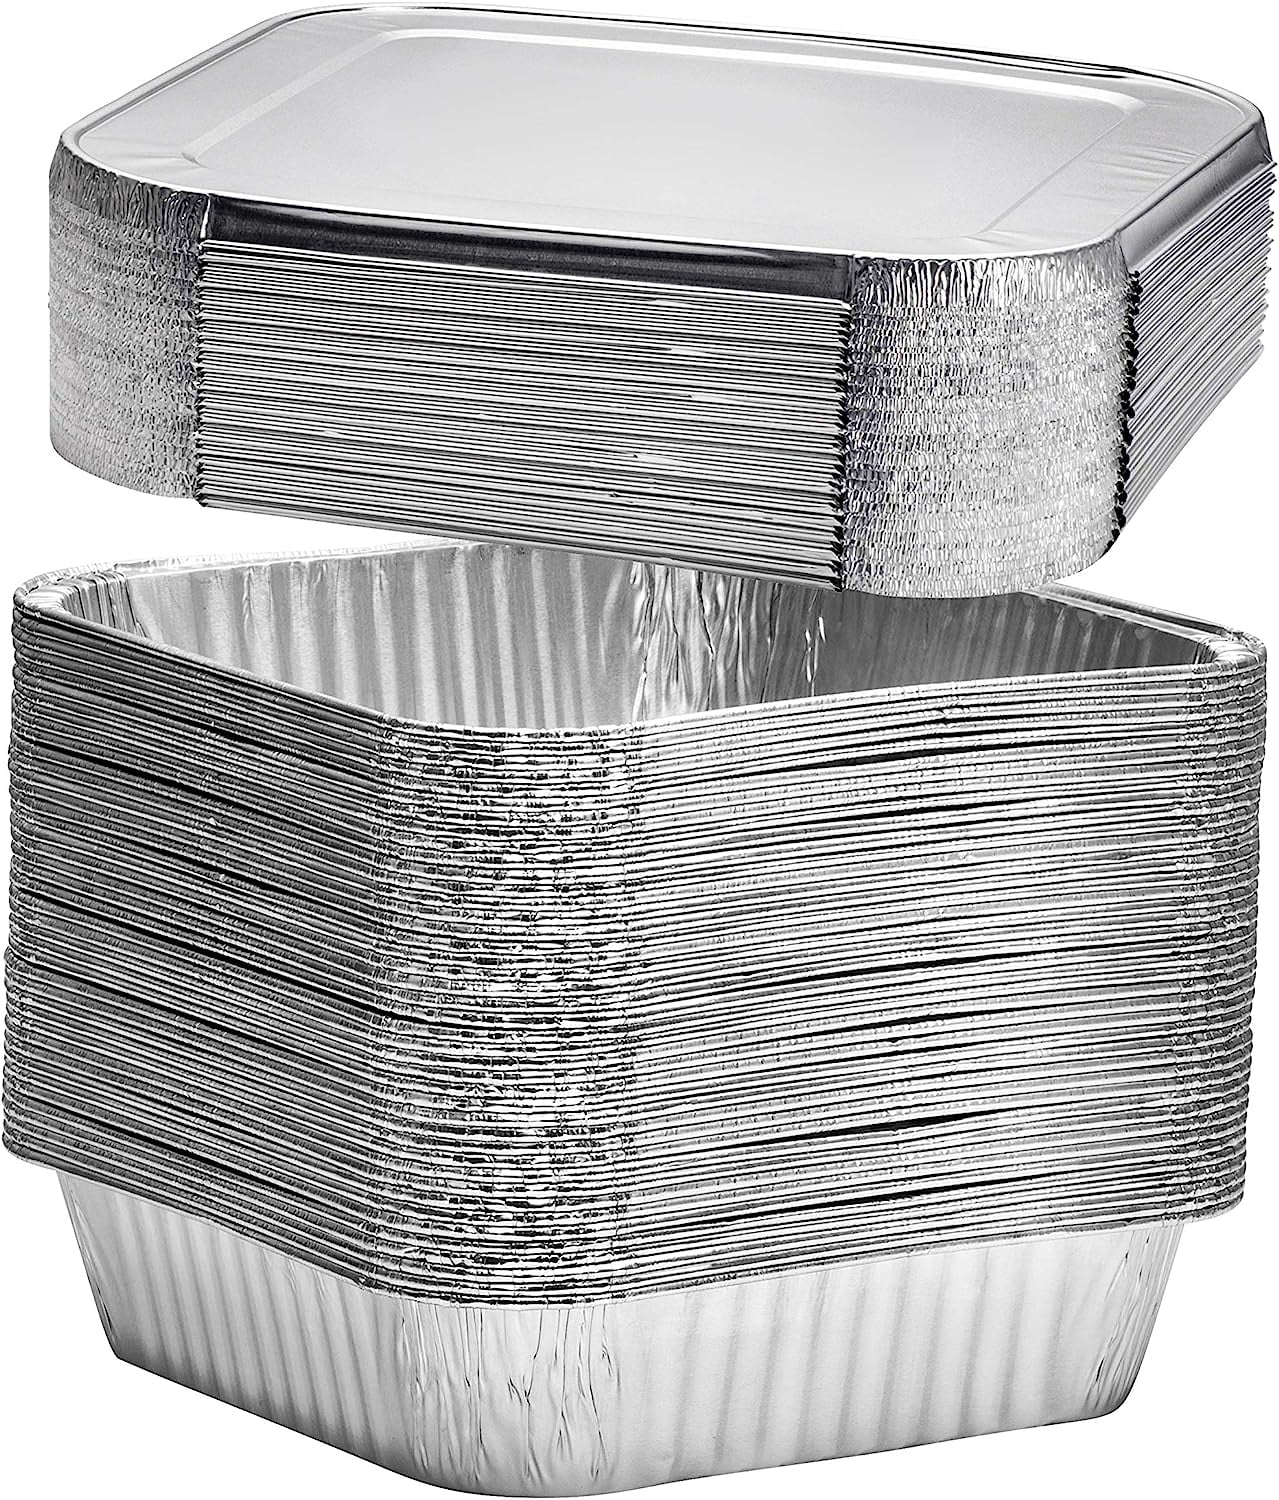 Katbite 8x8 inch (20 Packs) Disposable Aluminum Foil Pans With With Clear  Lids Foil Baking Pans Square Aluminum Baking Pans